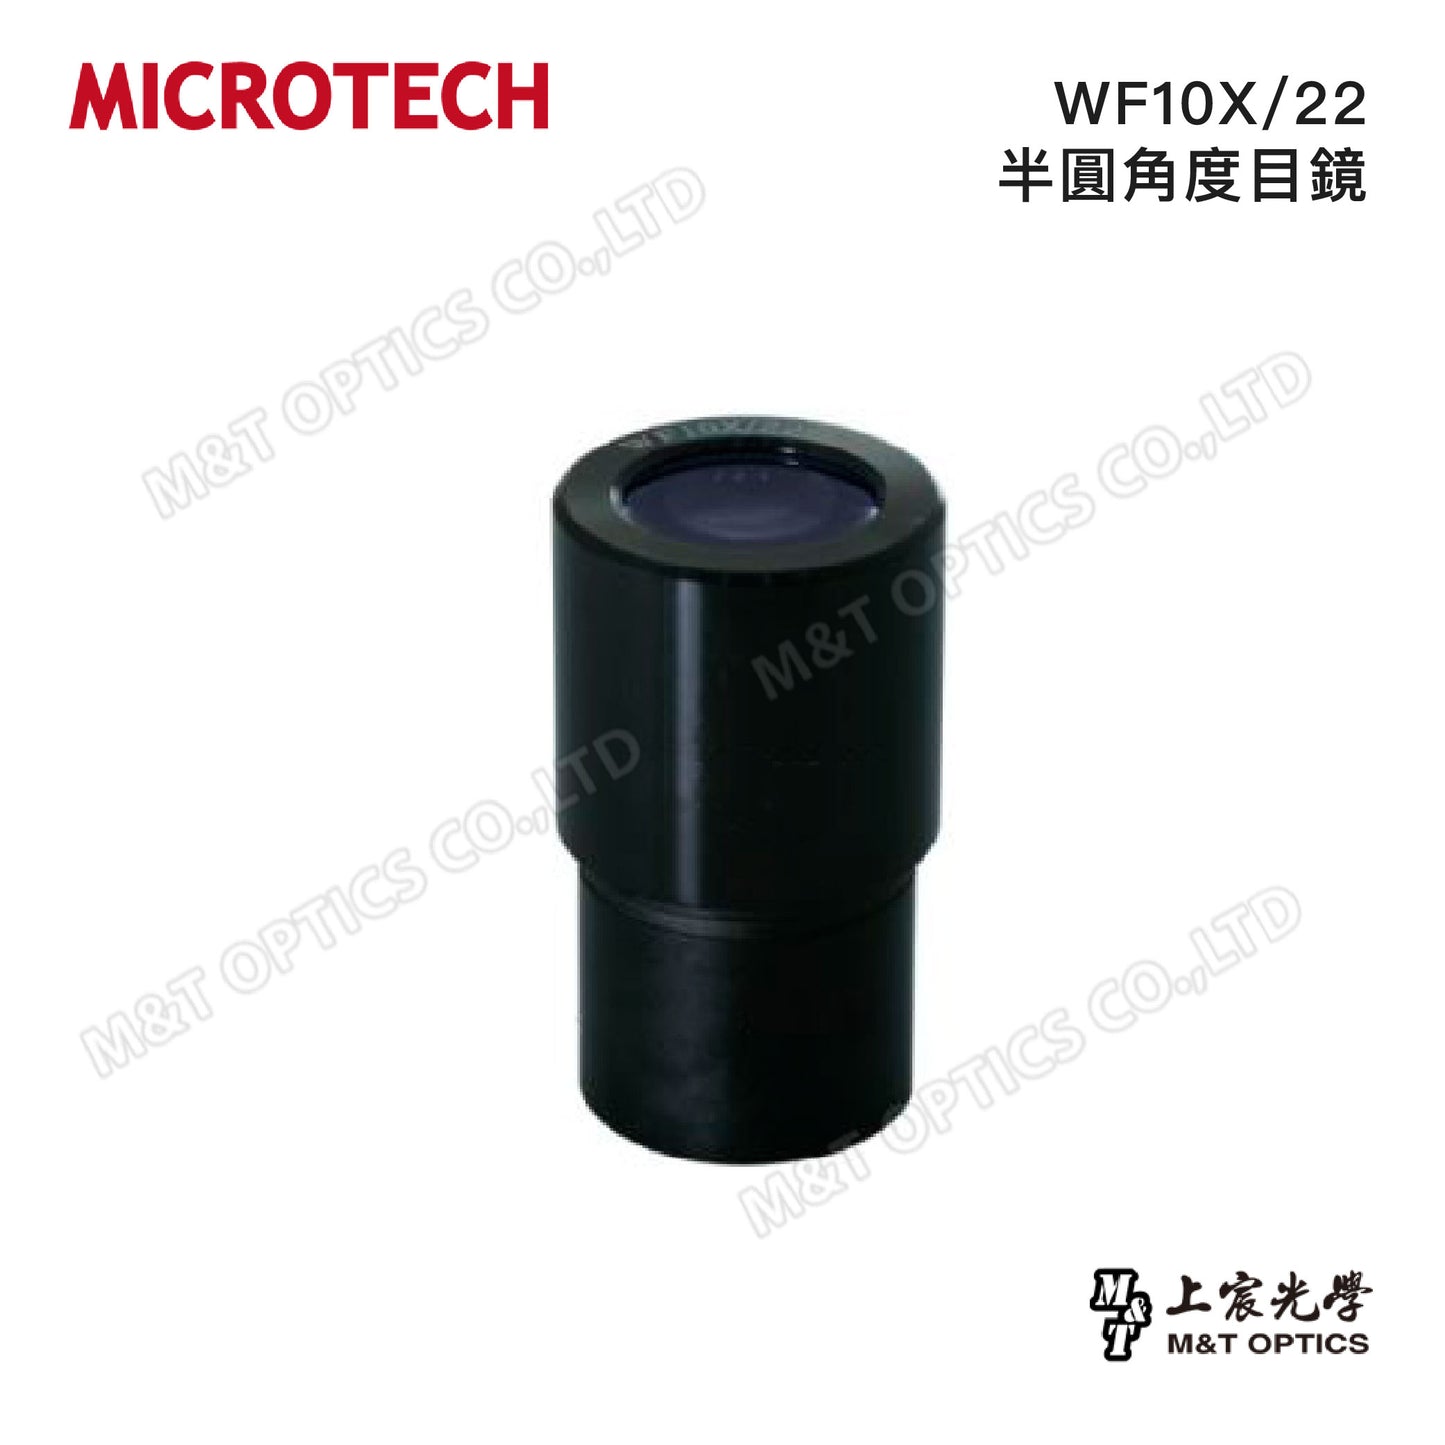 WF10X/22半圓角度目鏡/10X/20十字雙軸刻劃目鏡(適用立體顯微鏡)